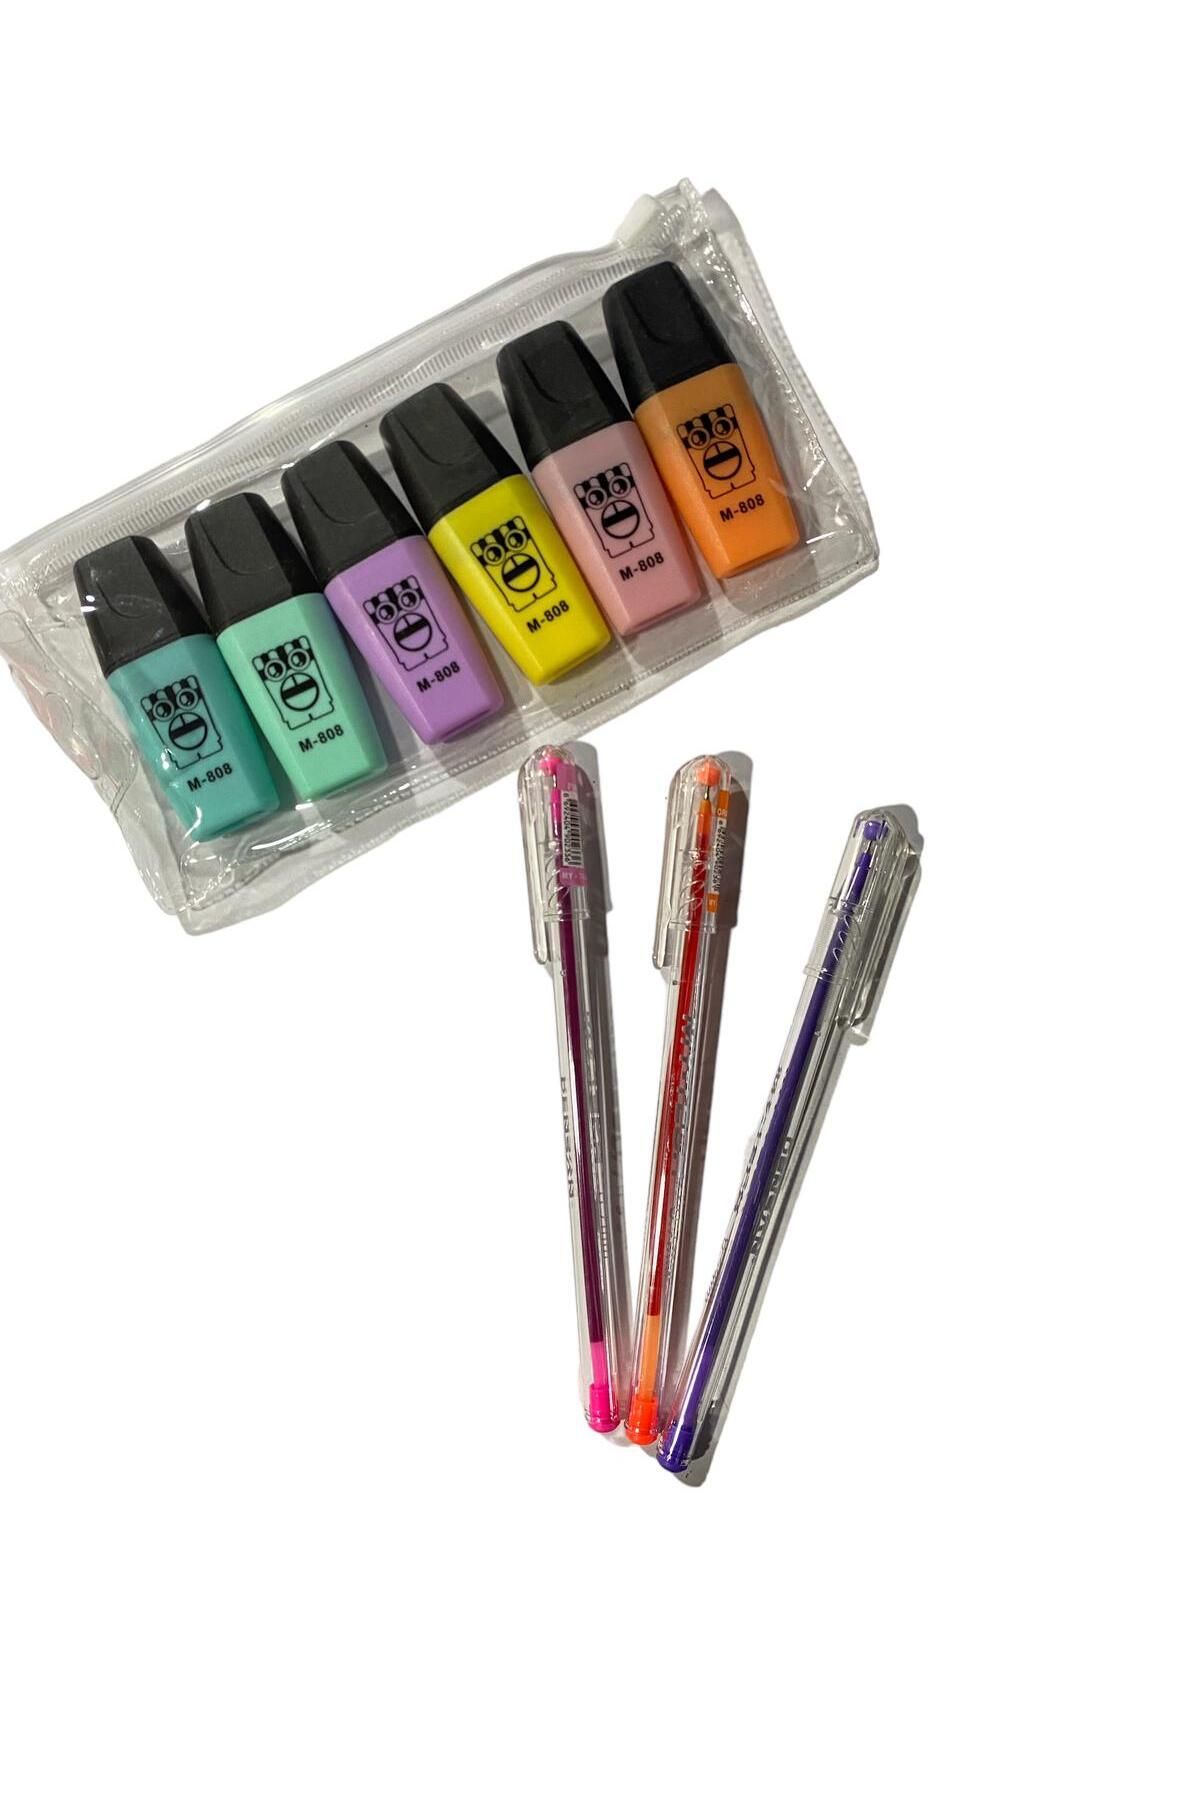 Dudo Baby 6 lı Fosforlu Kalem Ve 3 lü Renkli Tükenmez Kalem Set